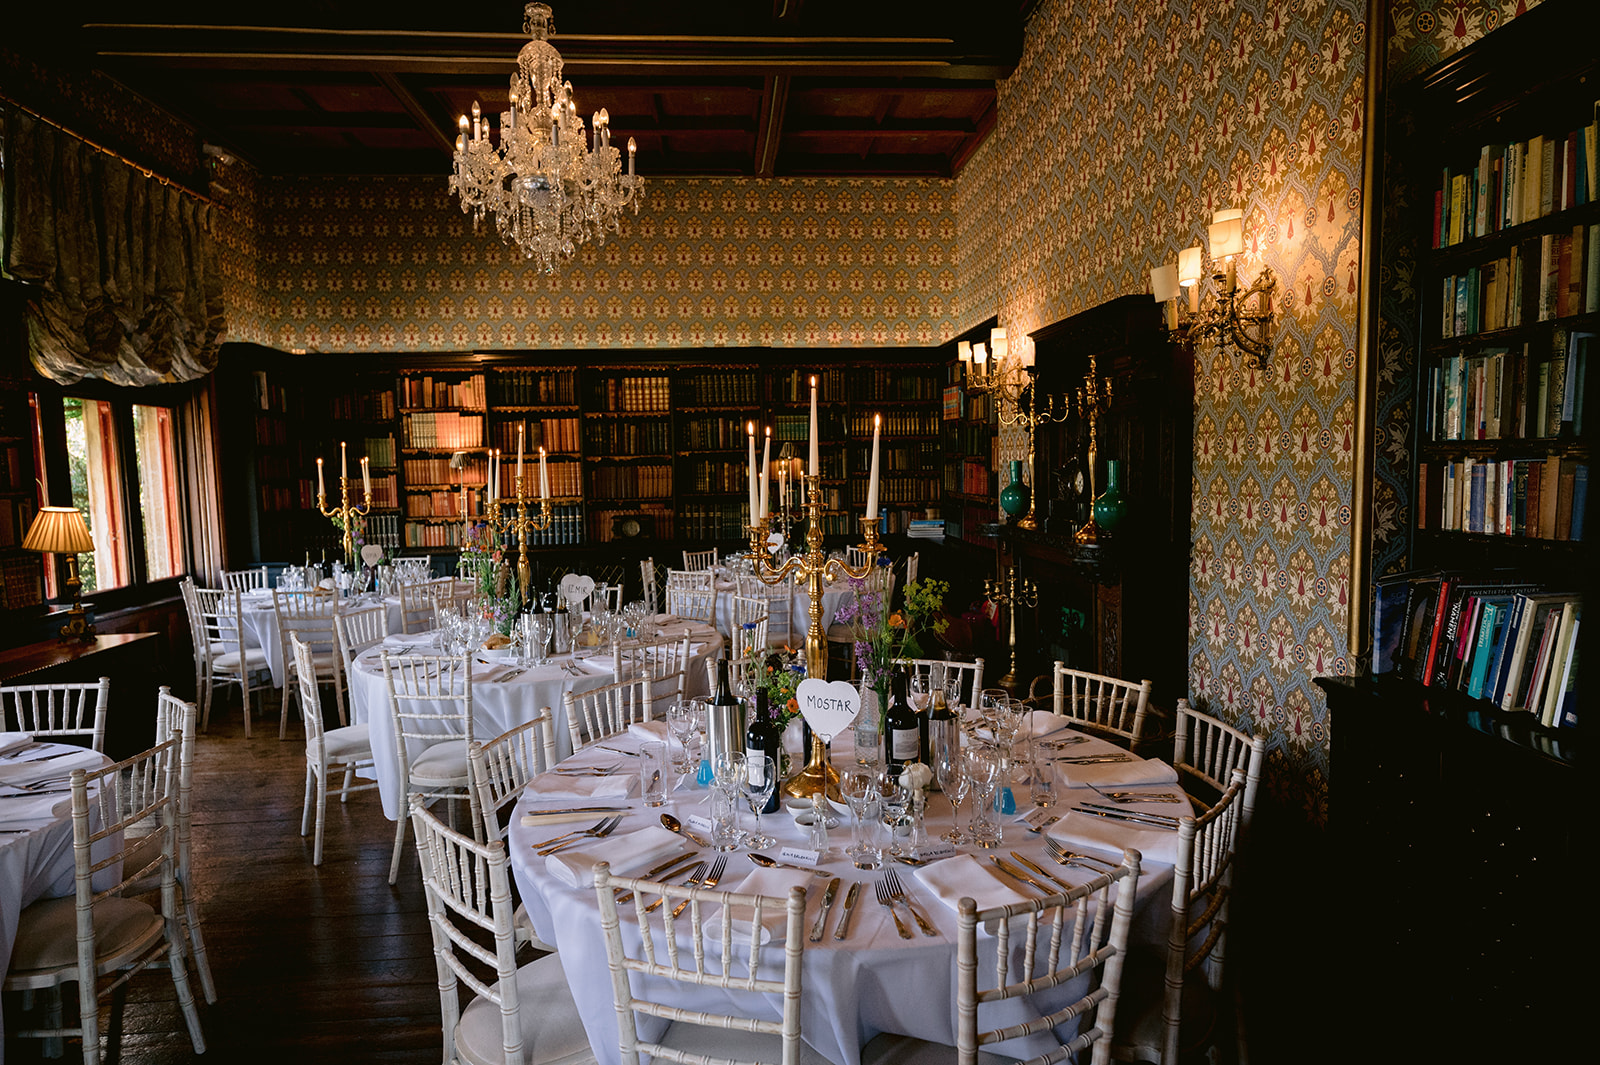 Elegant pre-wedding decor sets the scene at Huntsham Court castle, England.